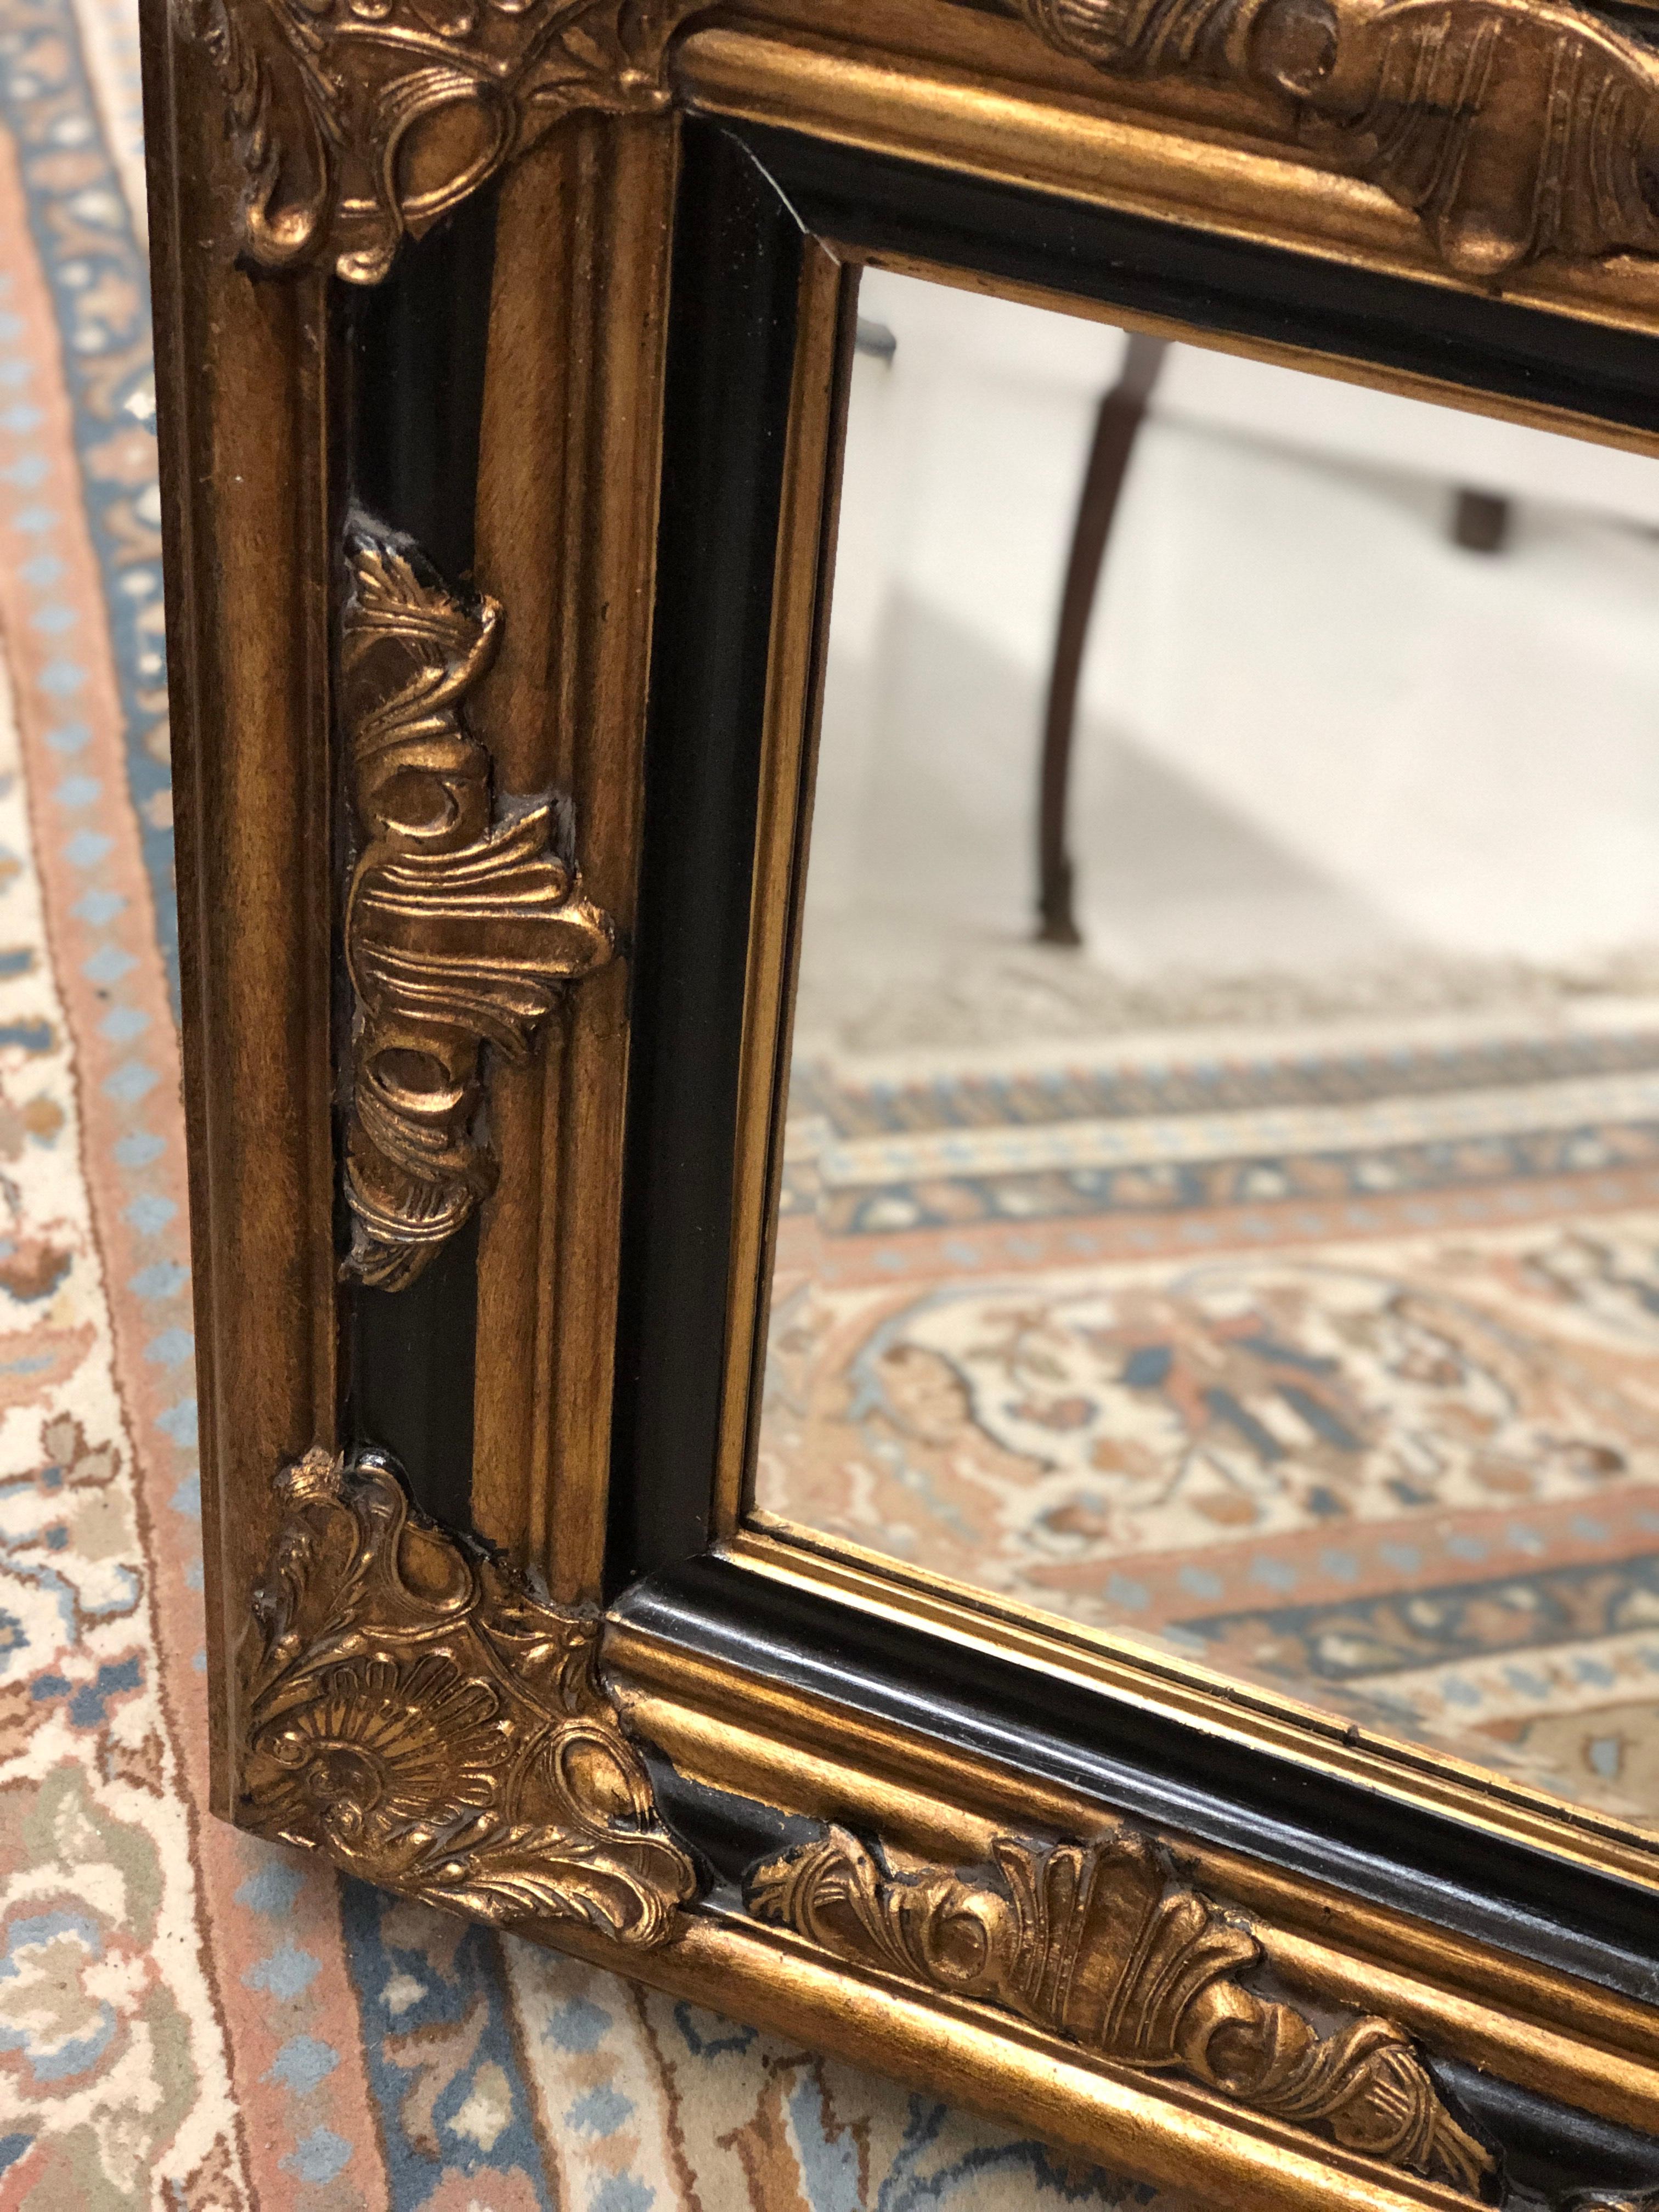 Sehr massiver und beeindruckender Vergoldungsspiegel mit originalem Kristallglas im Louis XV-Stil.
Sehr guter Zustand.
Frankreich, um 1900.